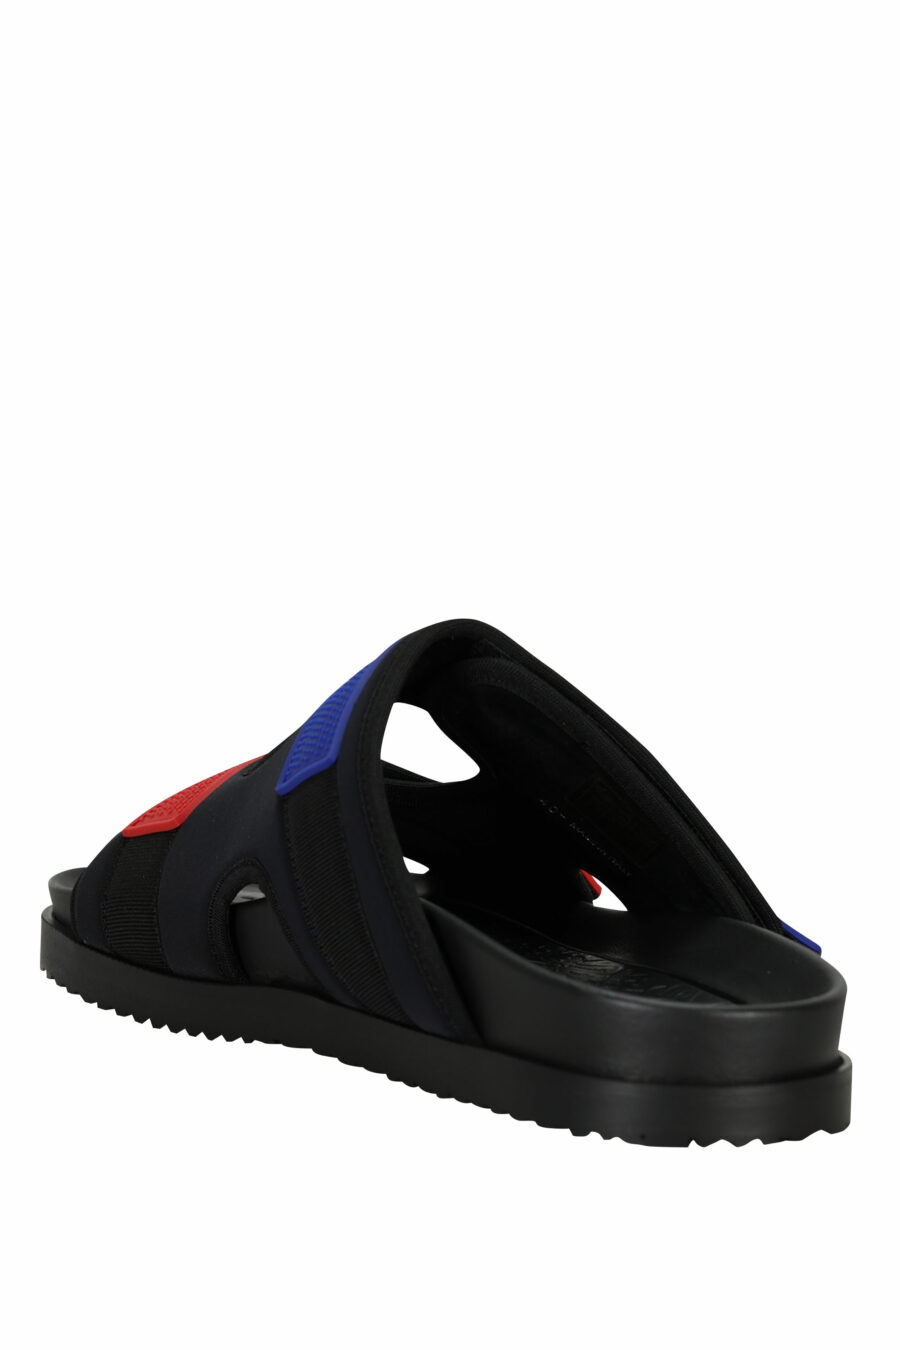 Schwarze Sandalen mit rotem und blauem Klettverschluss - 805777314715 3